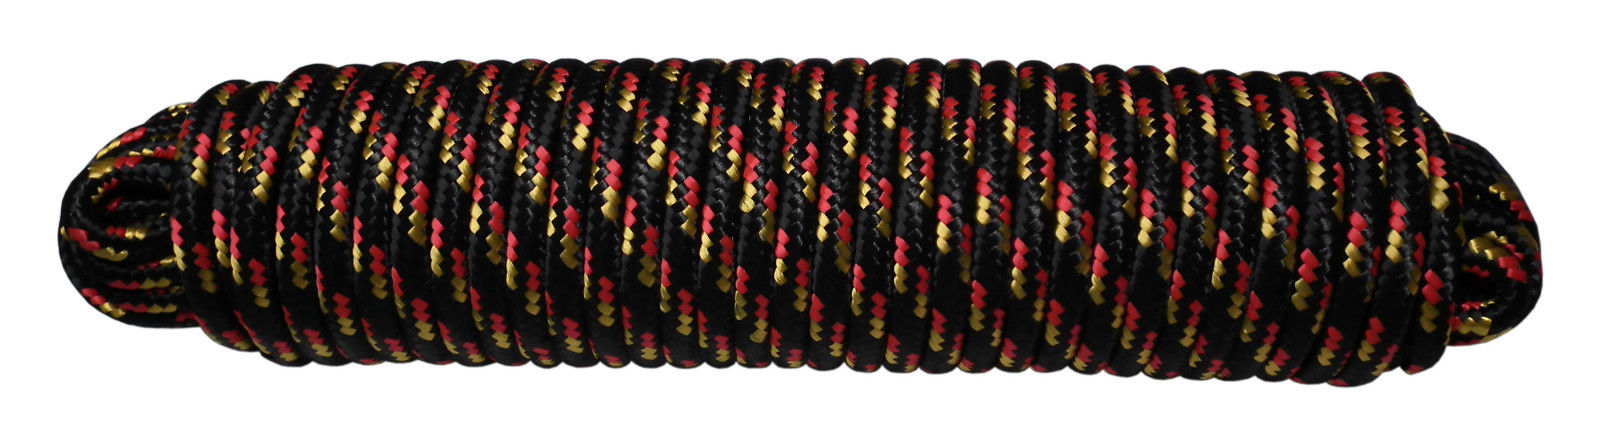 Polypropylene Rope 30M - Black